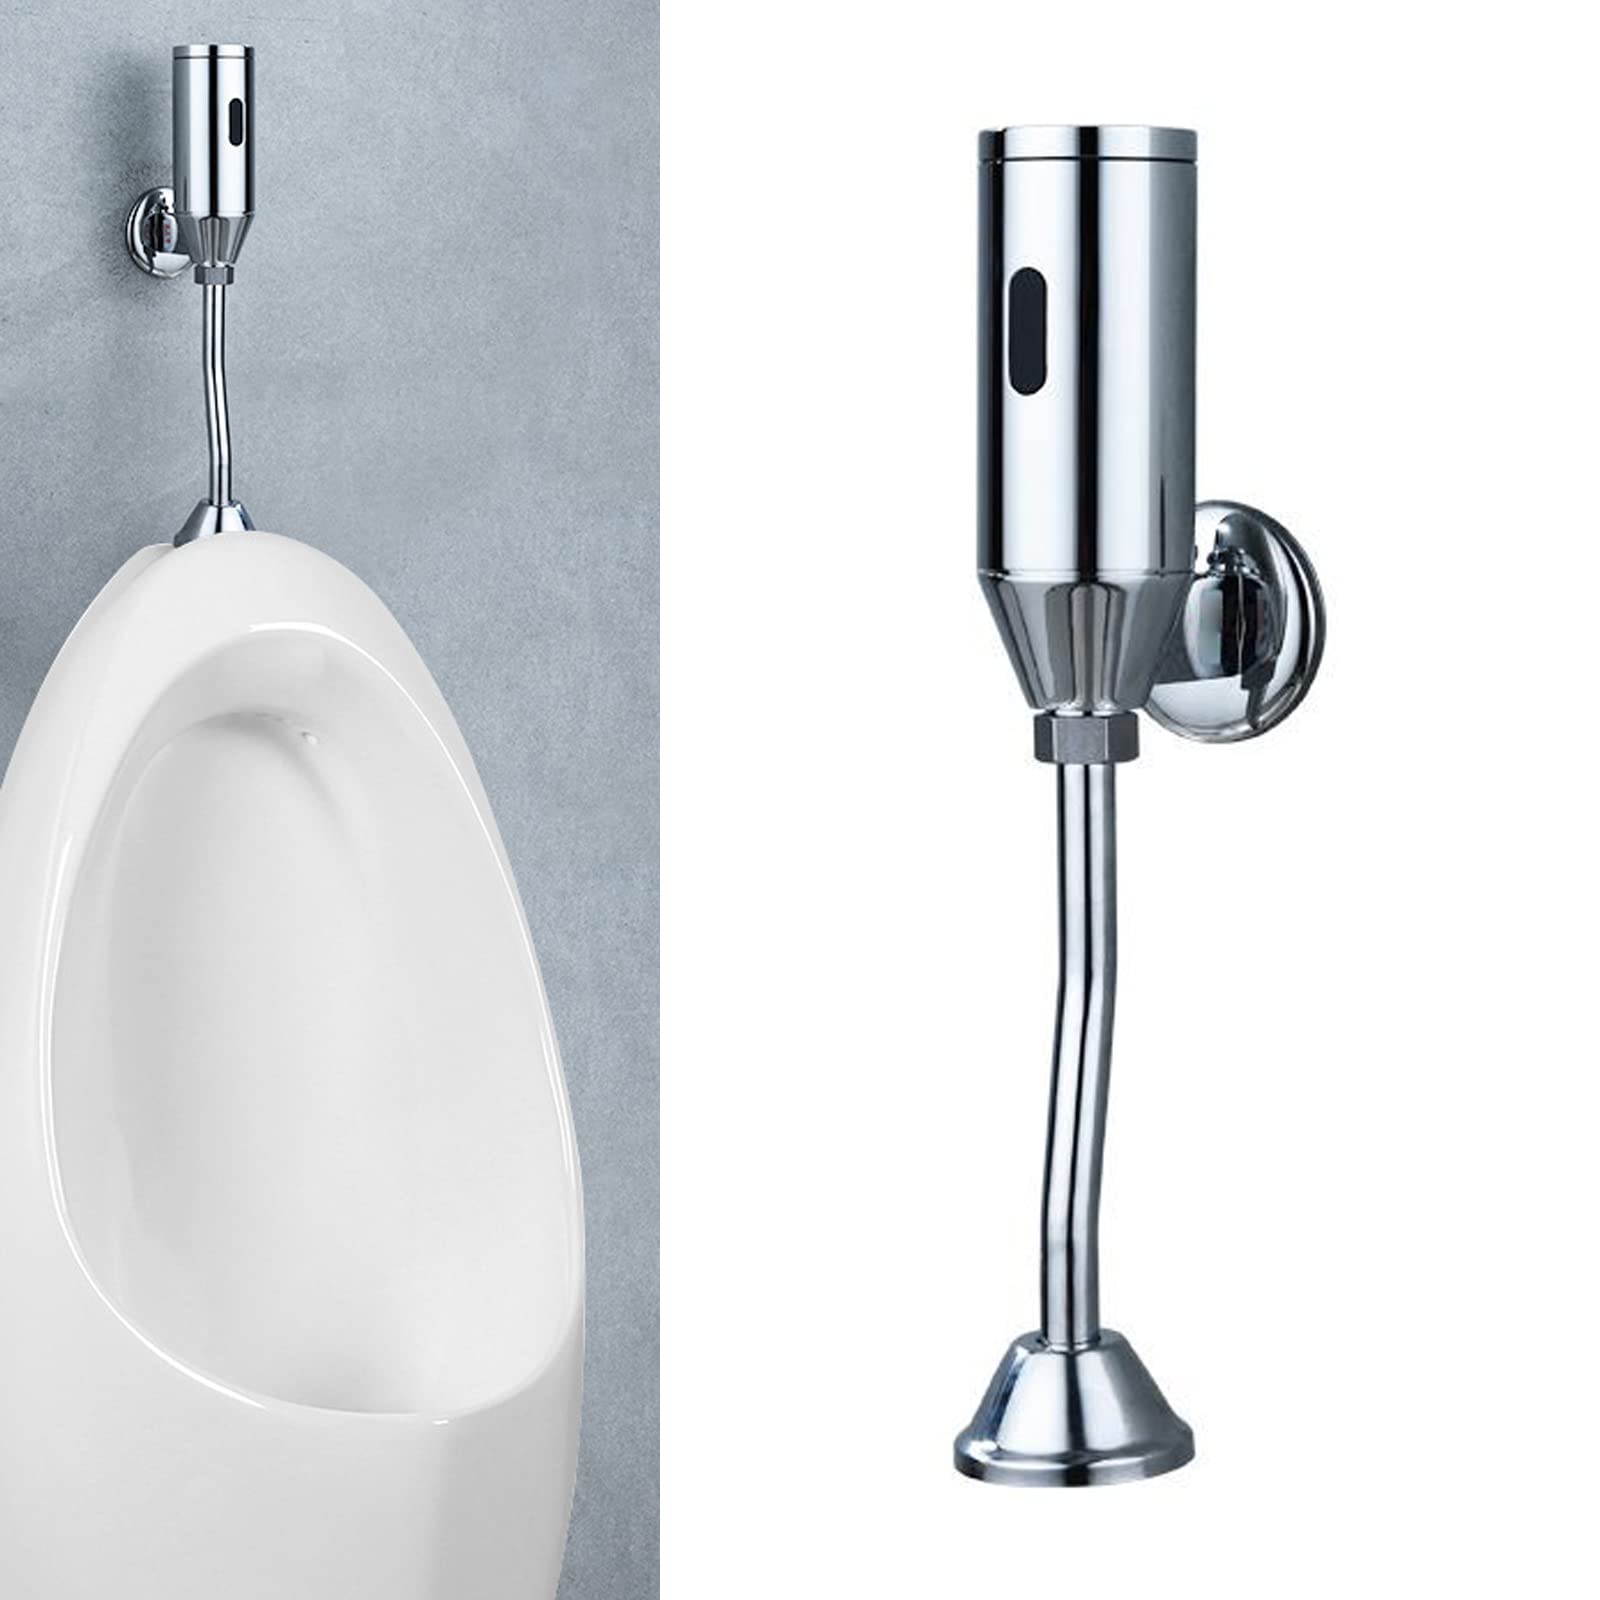 Urinal-Spülventil, Messing, Badezimmer, Toilette an der Wand montiert intelligenter automatischer Sensor, berührungsloses Urinalventil